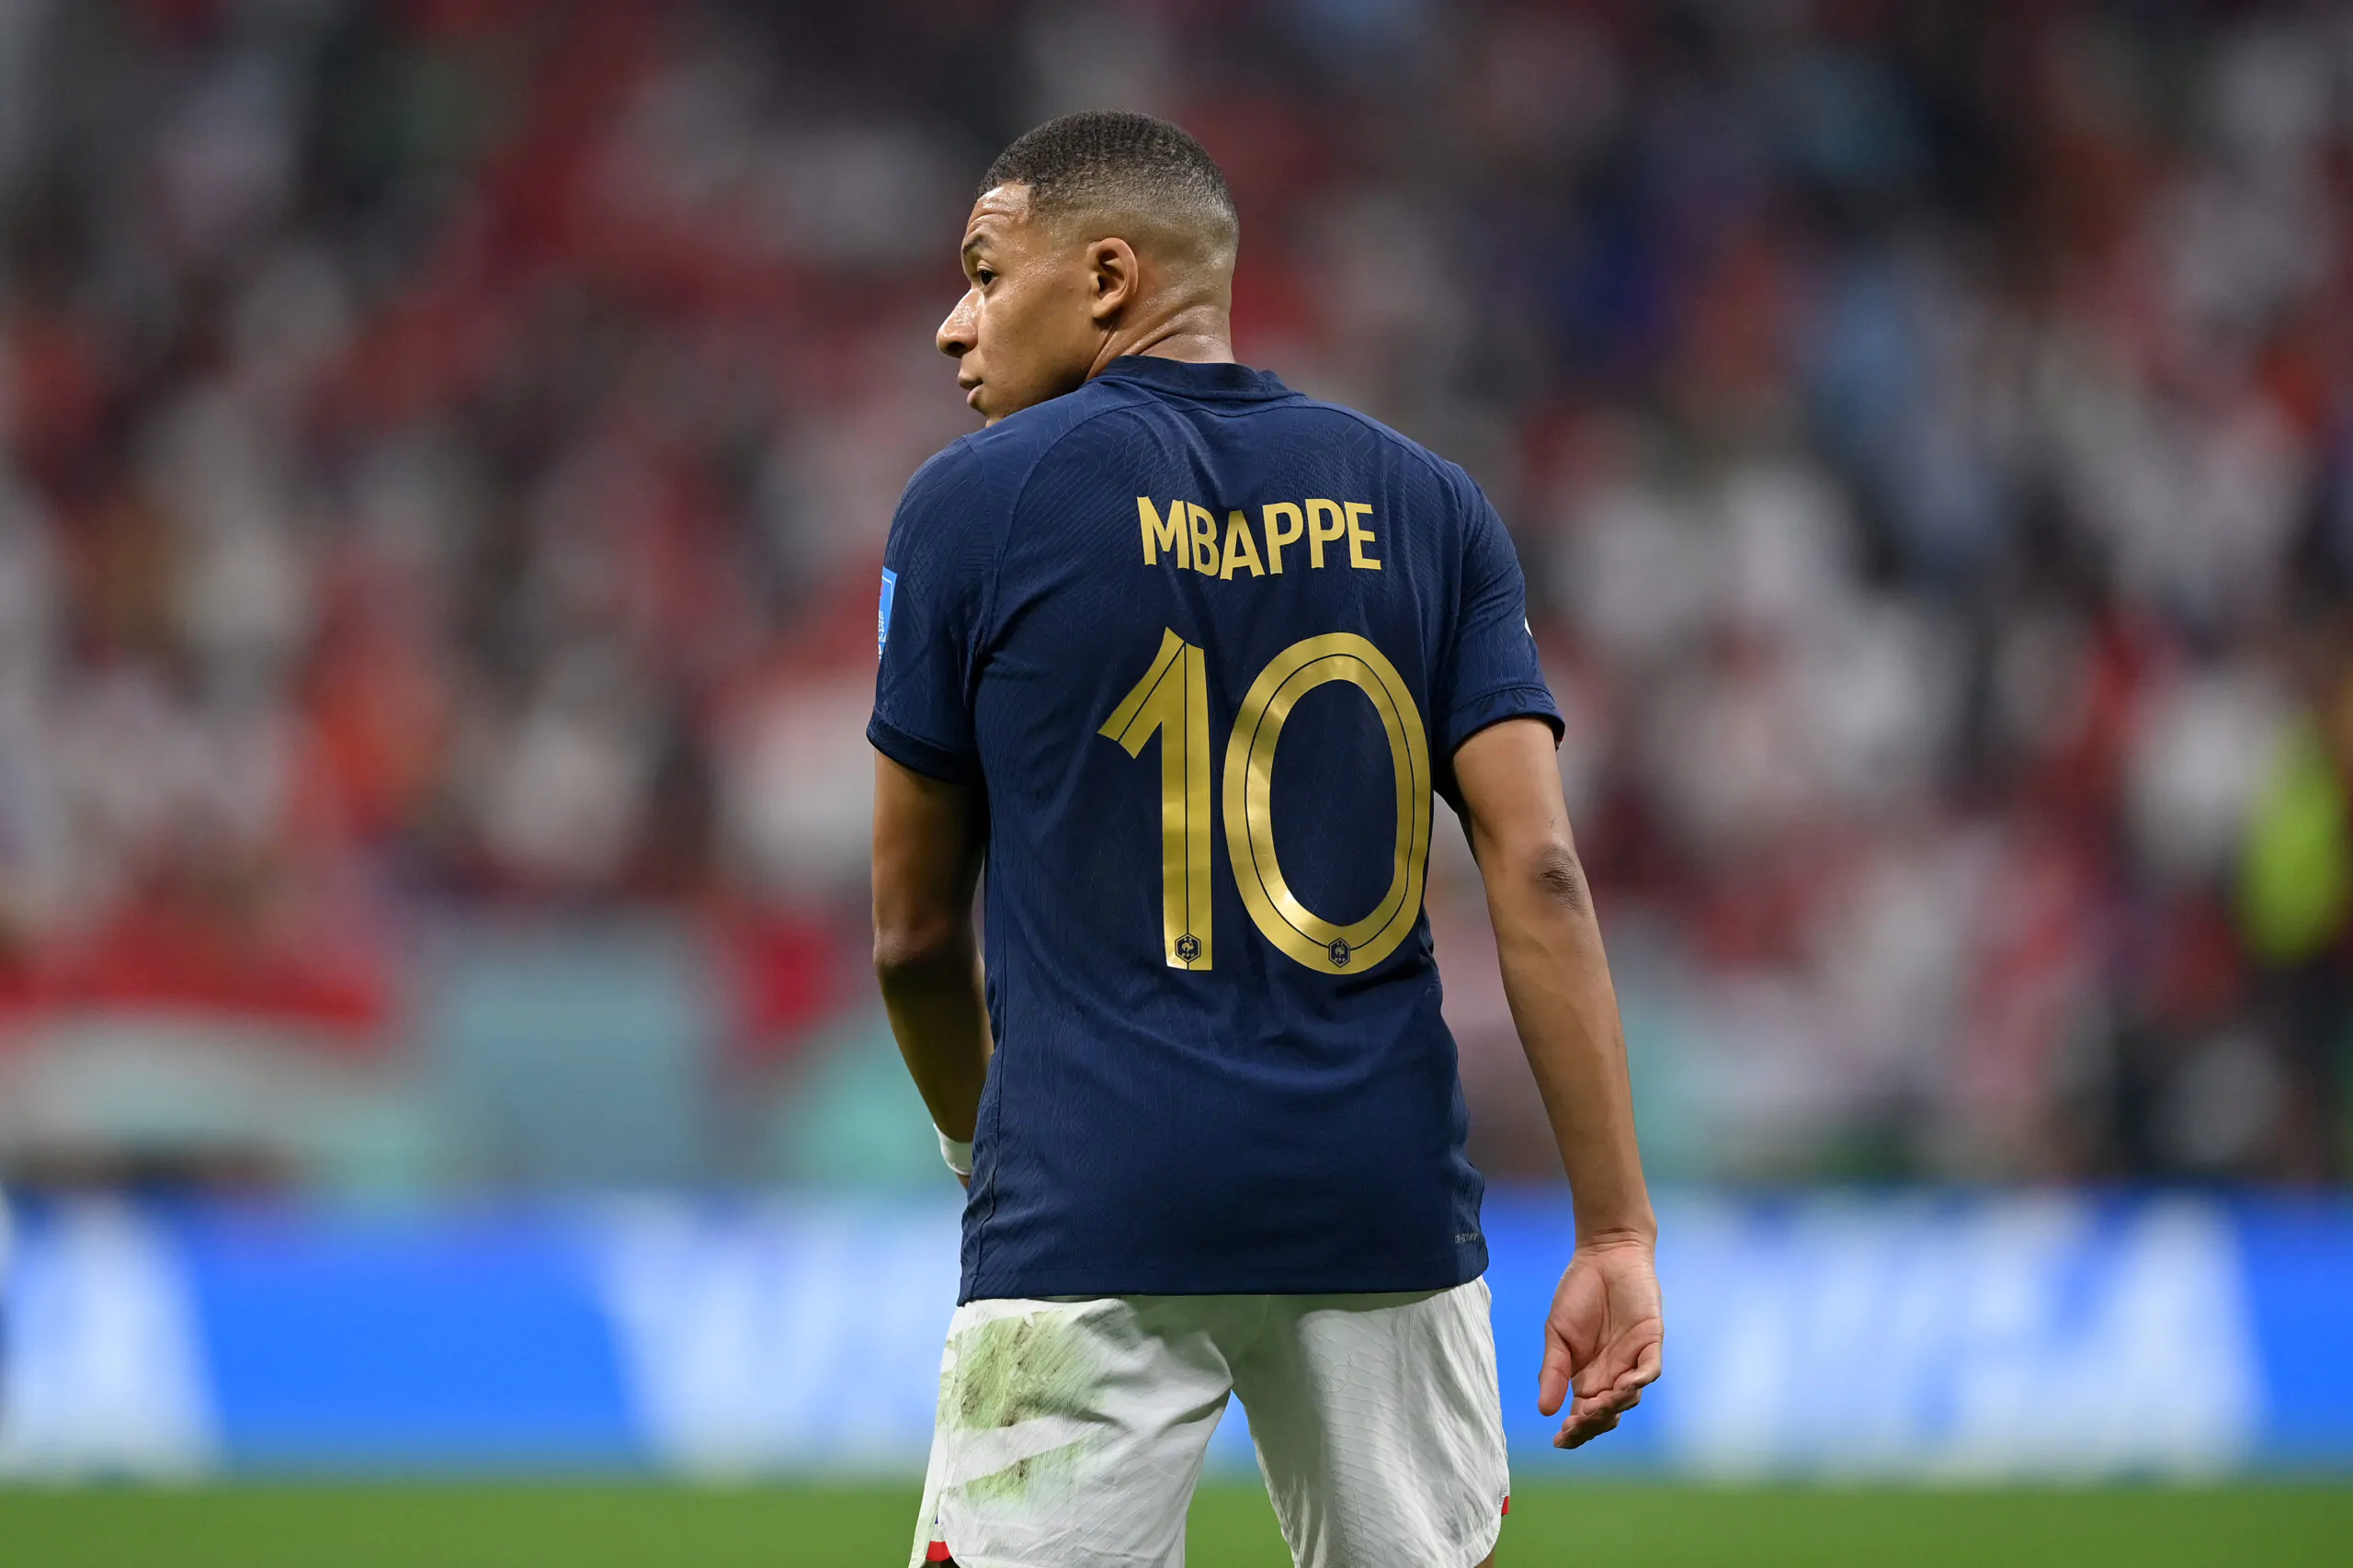 “Mbappé è il figlio spirituale di Pelé”: la previsione dell’ex giocatore del Real Madrid